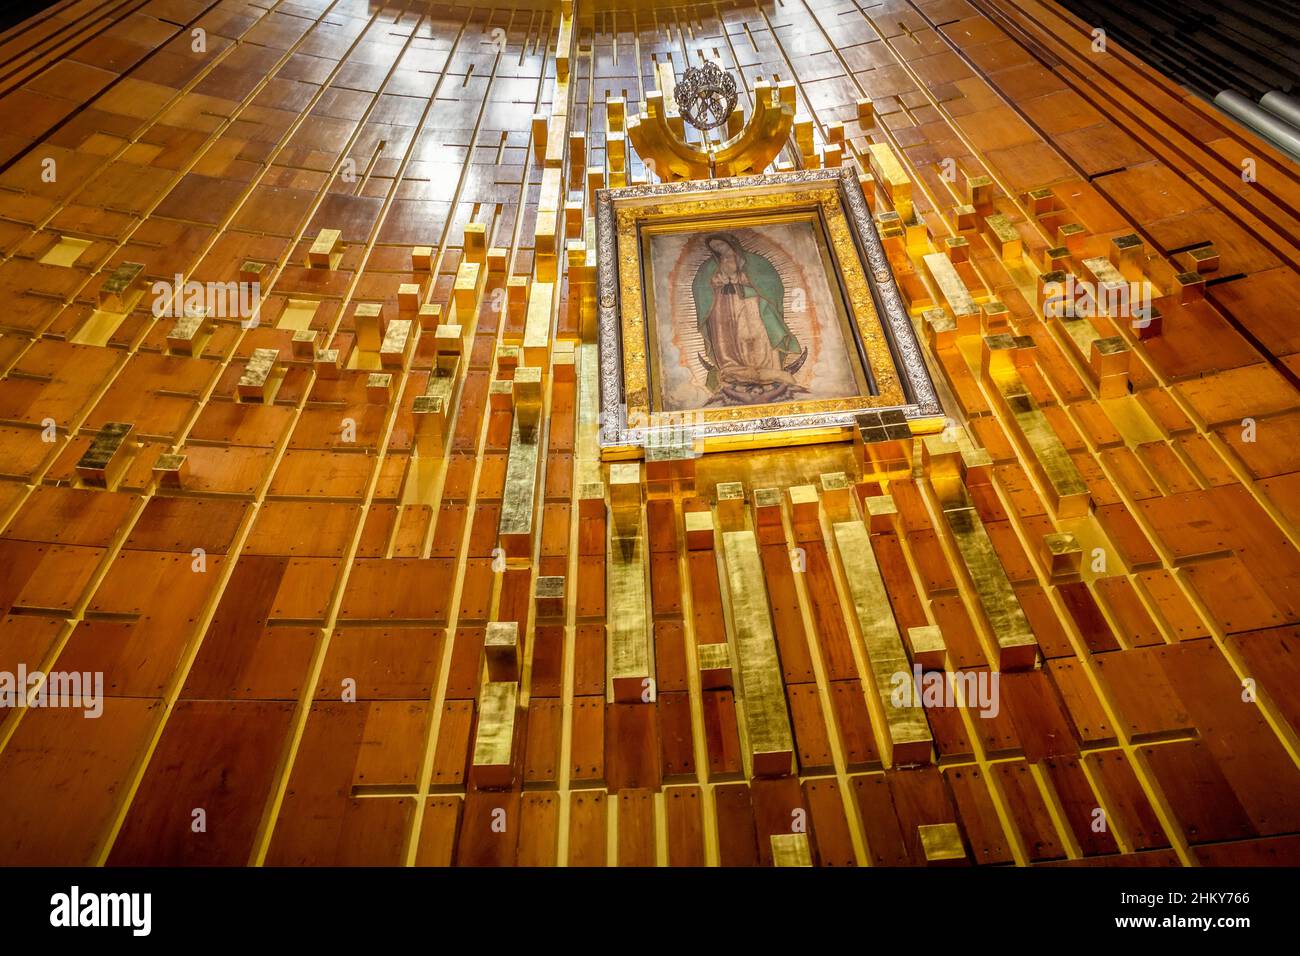 Bild der Jungfrau von Guadalupe. Neue Basilika unserer Lieben Frau von Guadalupe, römisch-katholische Kirche. Mexiko-Stadt. Nordamerika Stockfoto